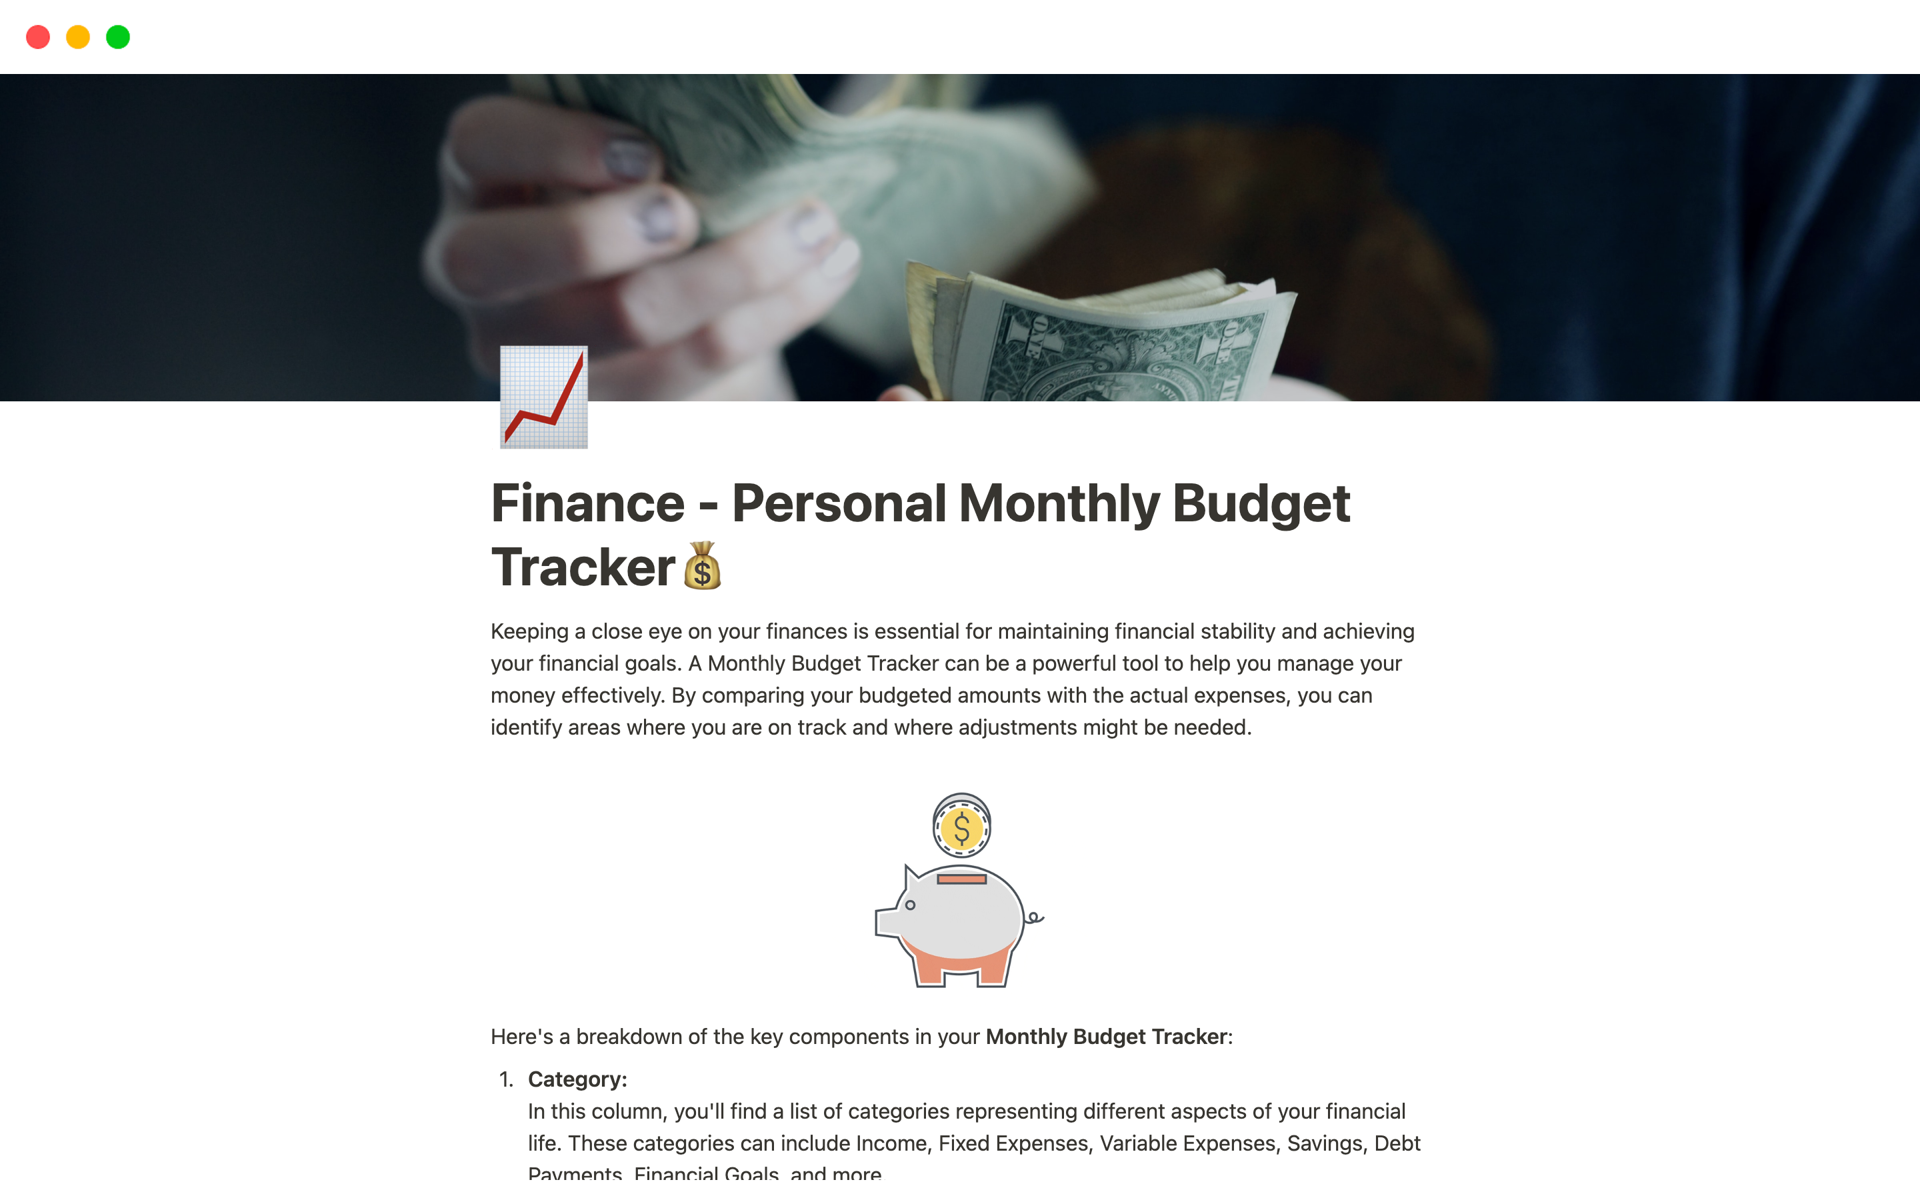 En förhandsgranskning av mallen för Finance - Personal Monthly Budget Tracker